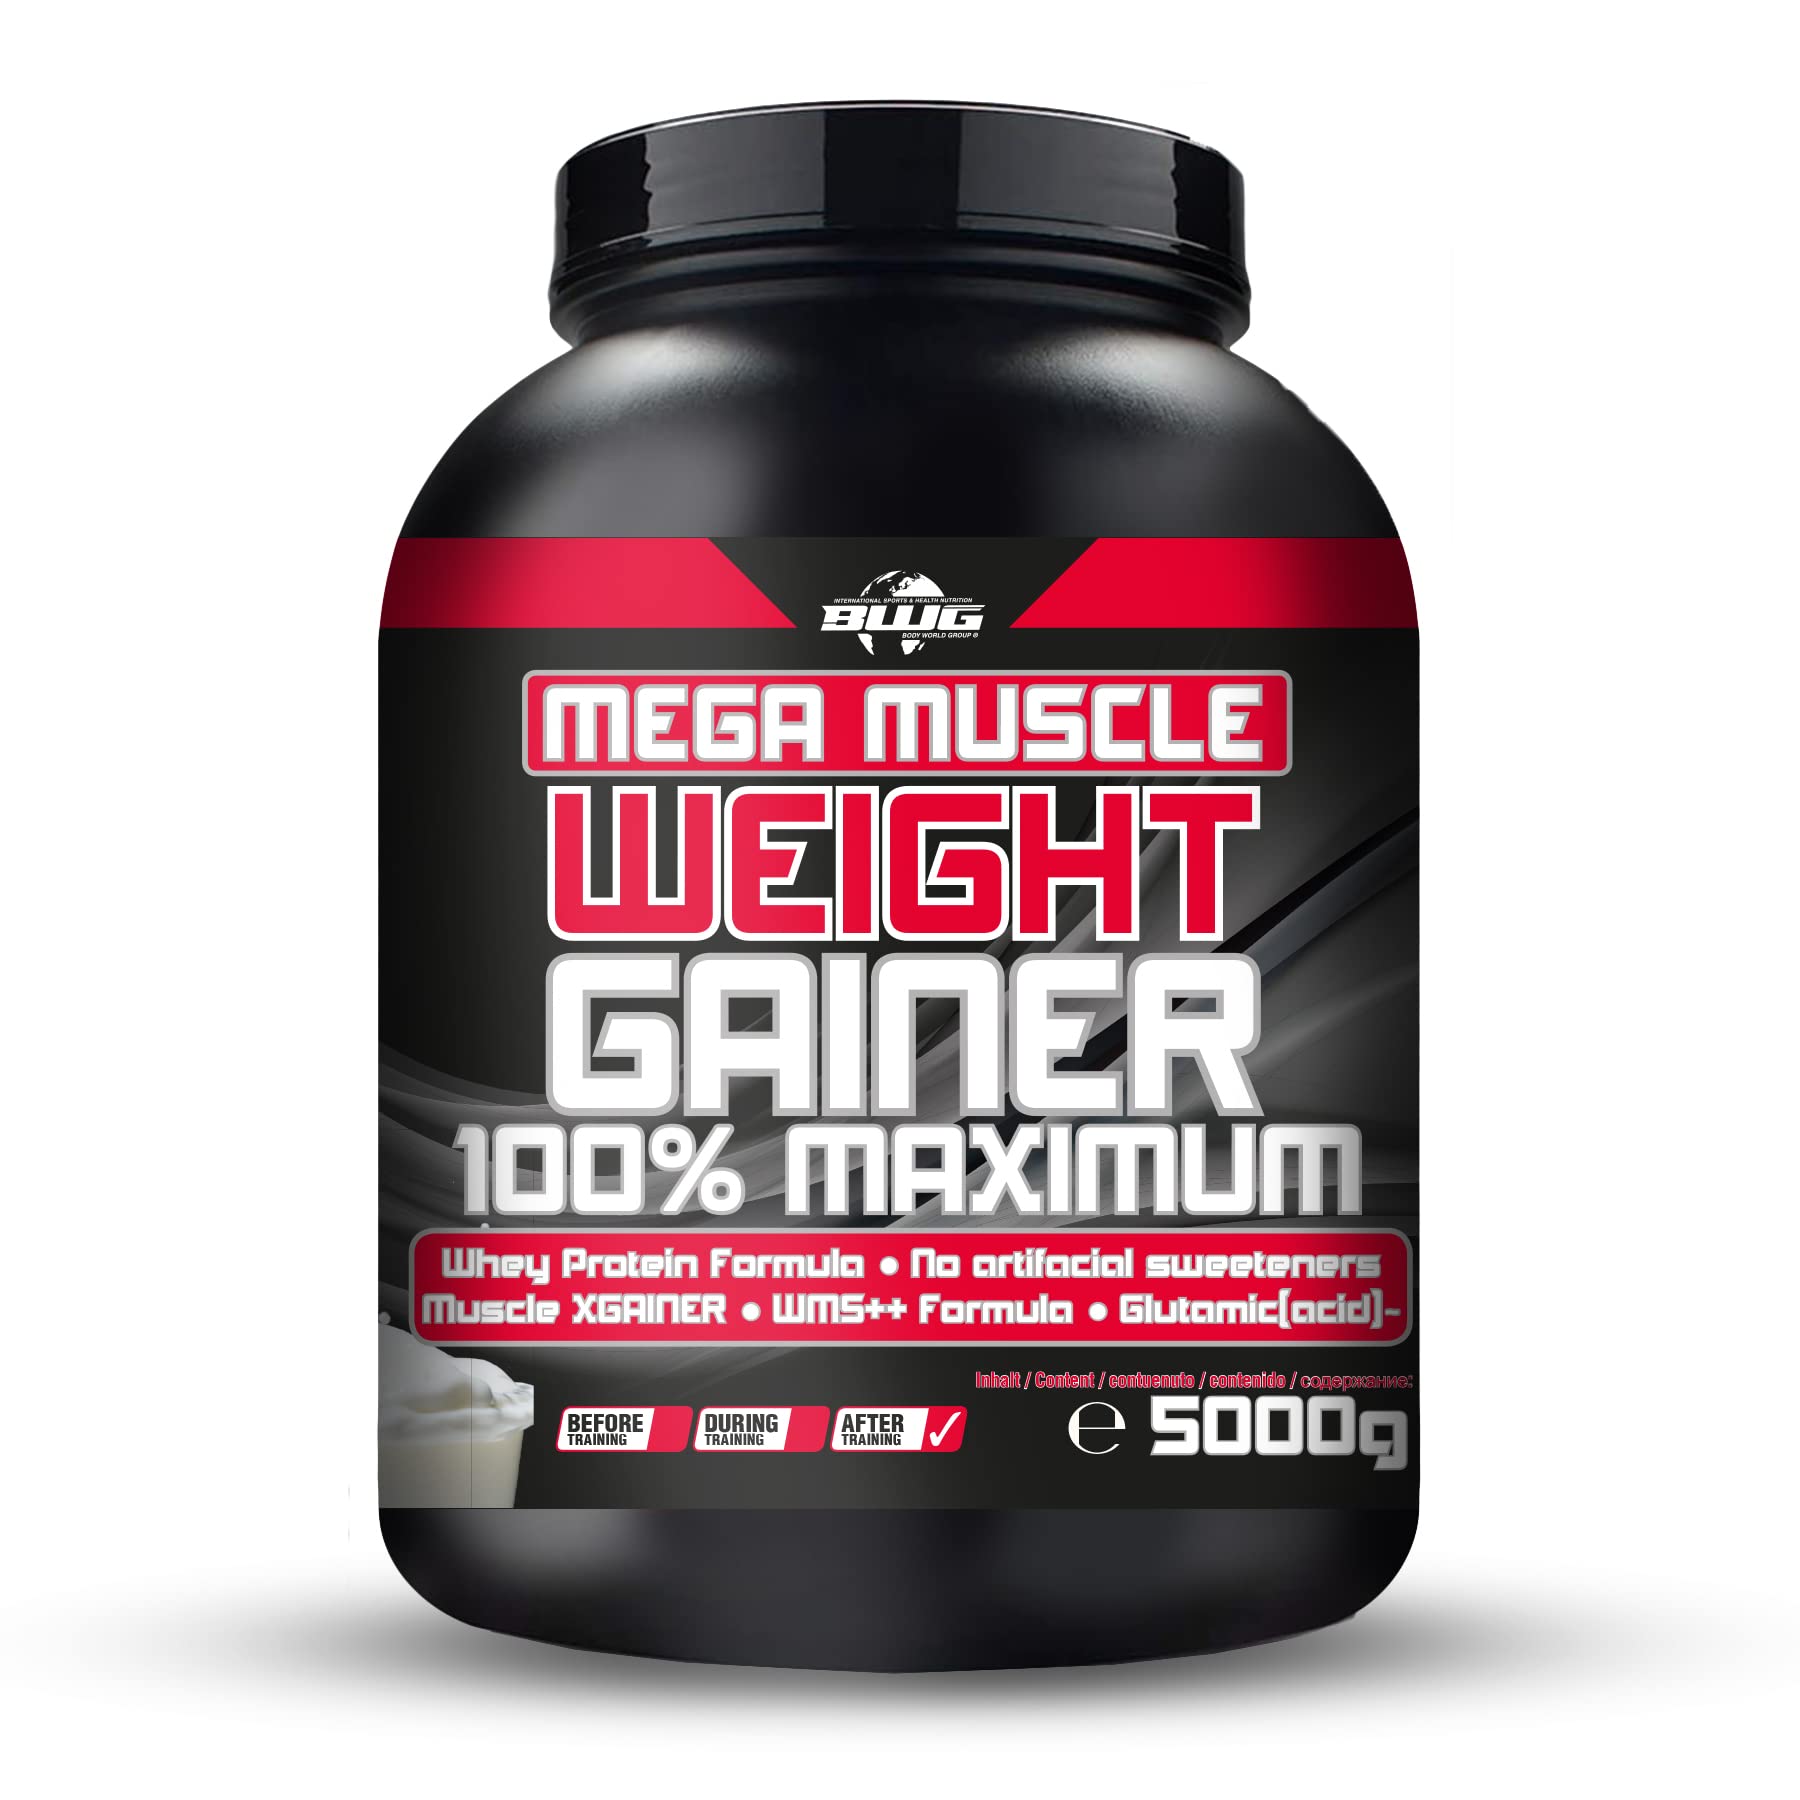 BWG Mega Muscle Weight Gainer 100% Maximum - perfekt für HardGainer und Massephasen – Kraftaufbau - Mega Cookies & Cream - Dose mit Dosierlöffel - (1x 5000g Dose)